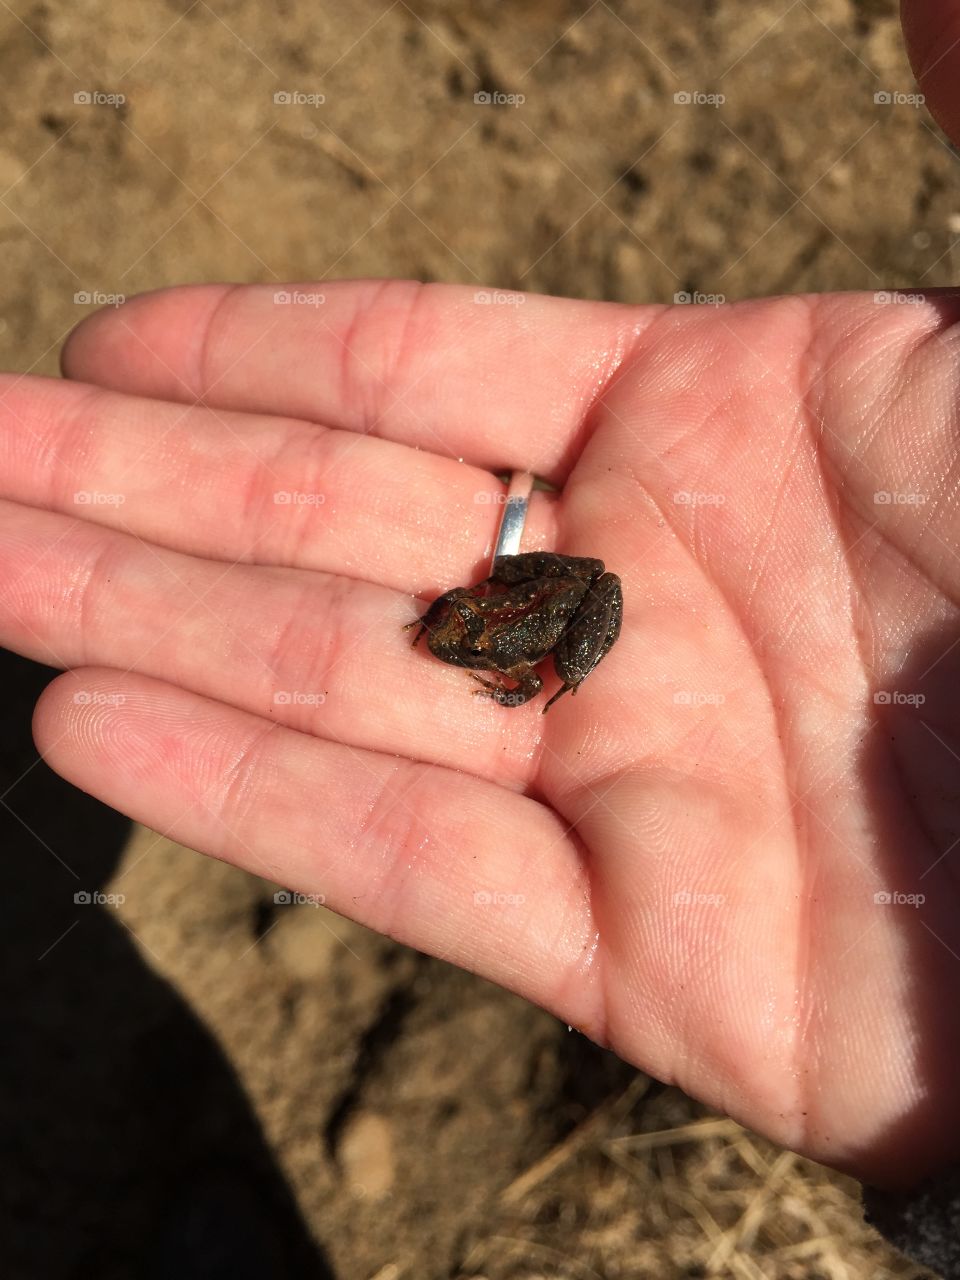 Tiny frog 🐸